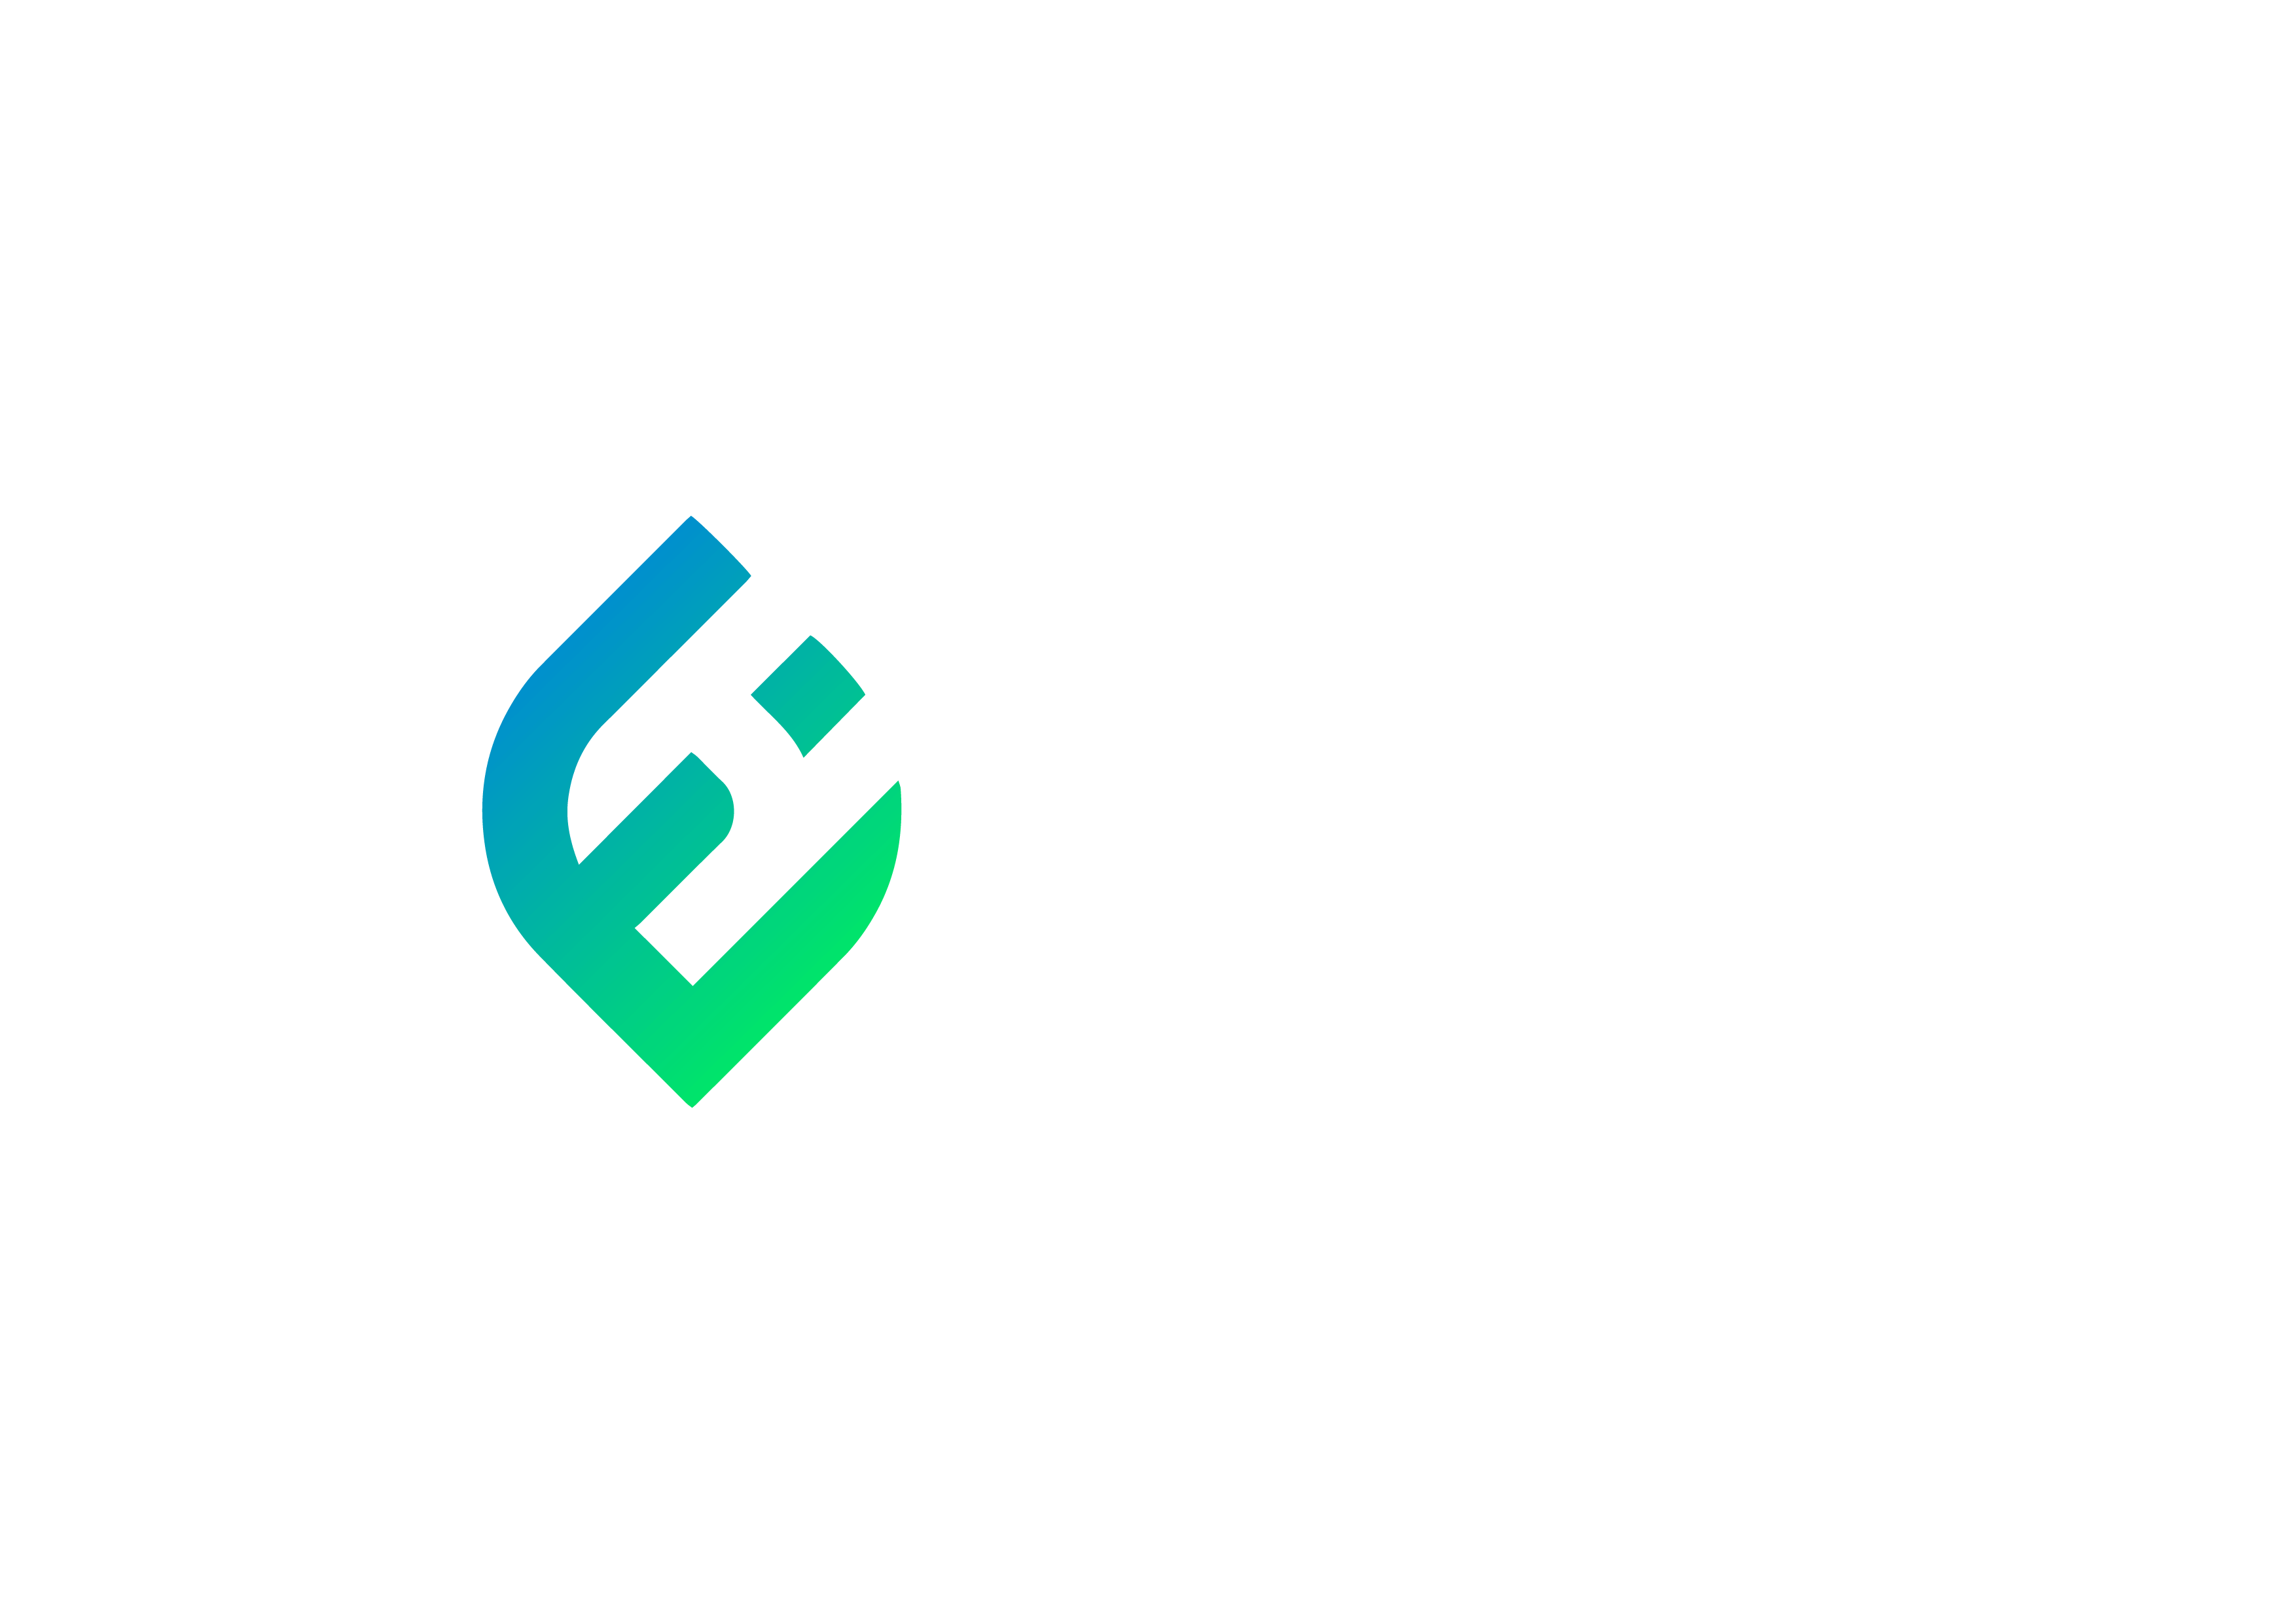 Energy insider logo transition white writing